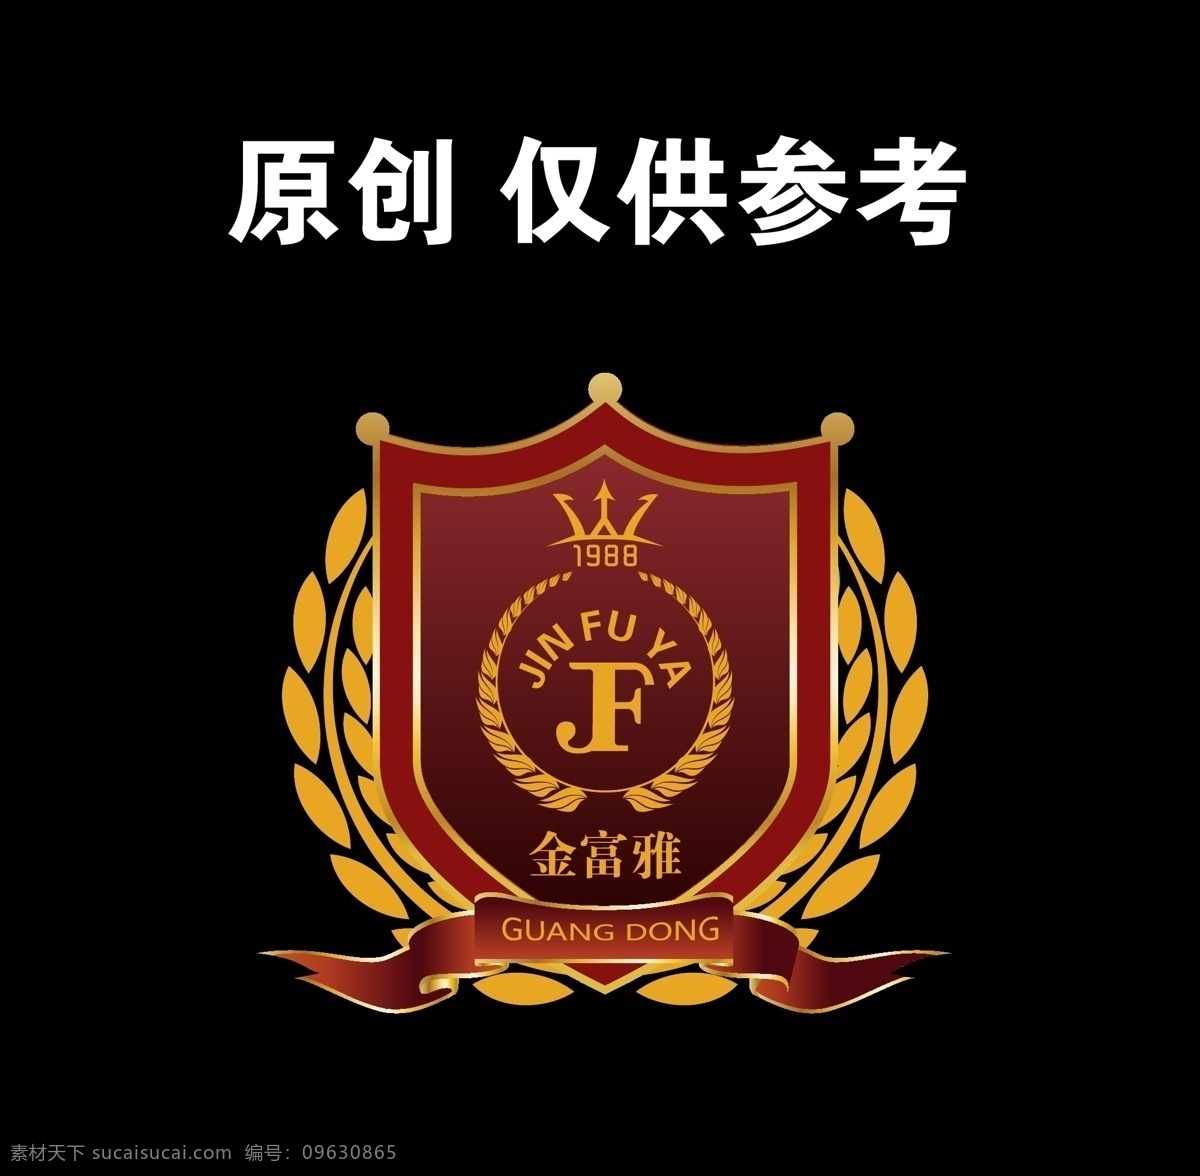 金 富豪 logo 麦穗logo 盾牌logo 盾牌 麦穗 f 原创logo logo设计 适量logo 矢量图